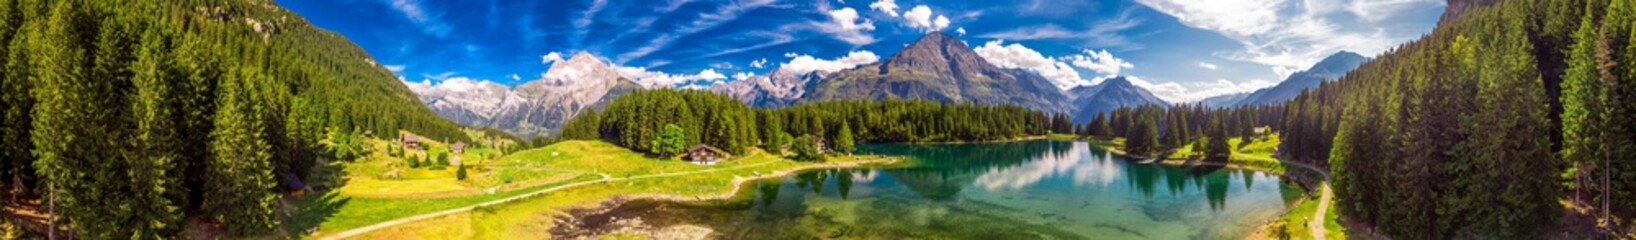 Naklejka premium Arnisee z Alpami Szwajcarskimi. Arnisee to zbiornik wodny w kantonie Uri w Szwajcarii w Europie